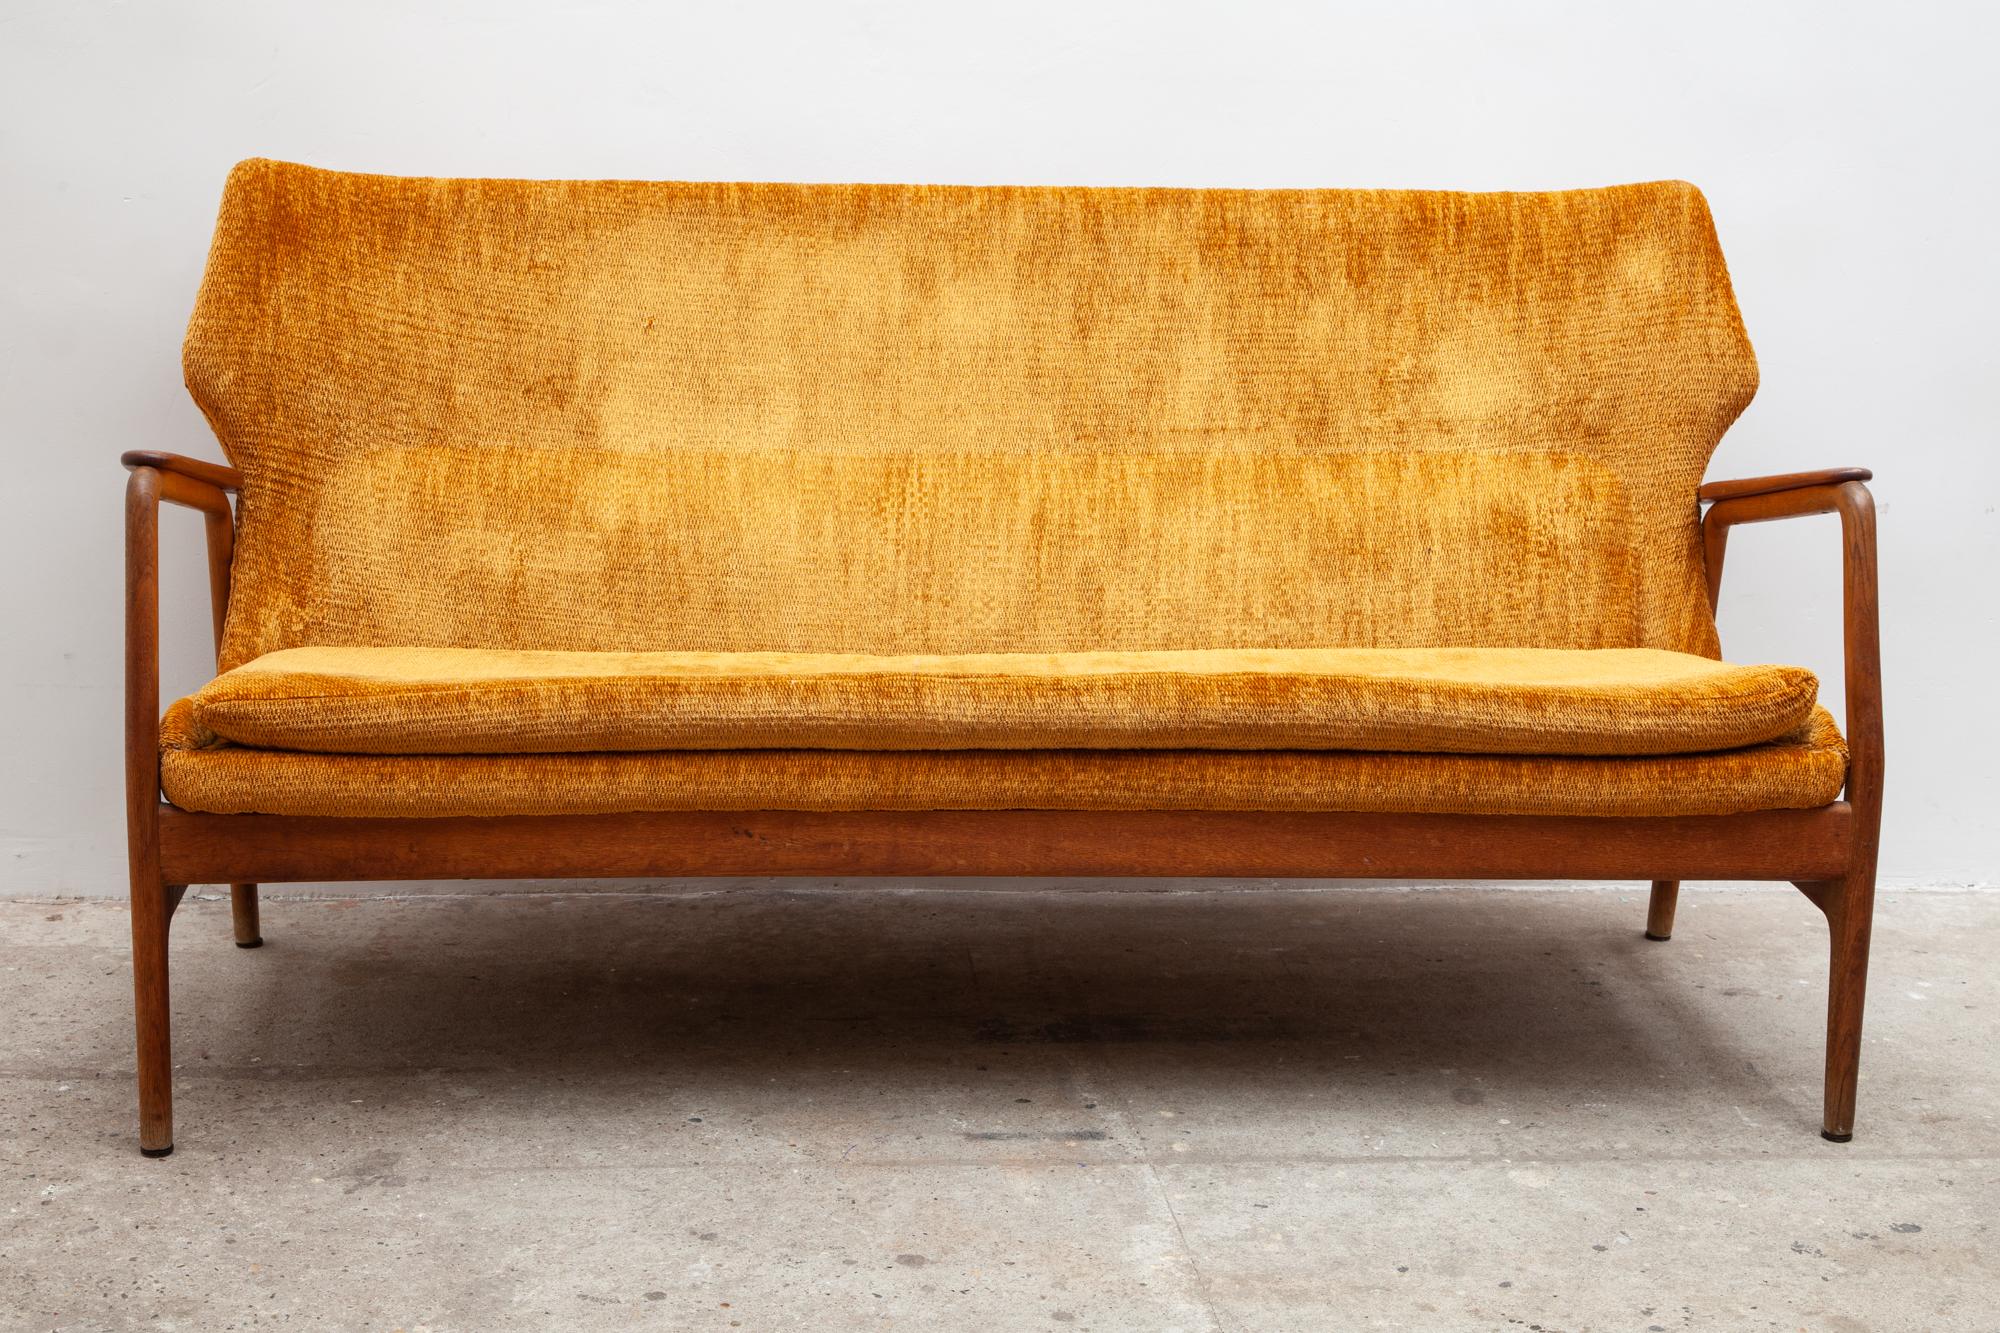 Rare ensemble de salon du milieu du siècle dernier composé d'un fauteuil, d'un fauteuil de lecture à dossier haut, d'un coussin pour la nuque et d'un canapé.
Cadre en teck magnifiquement sculpté et bouclier d'origine orange ambré retapissé.